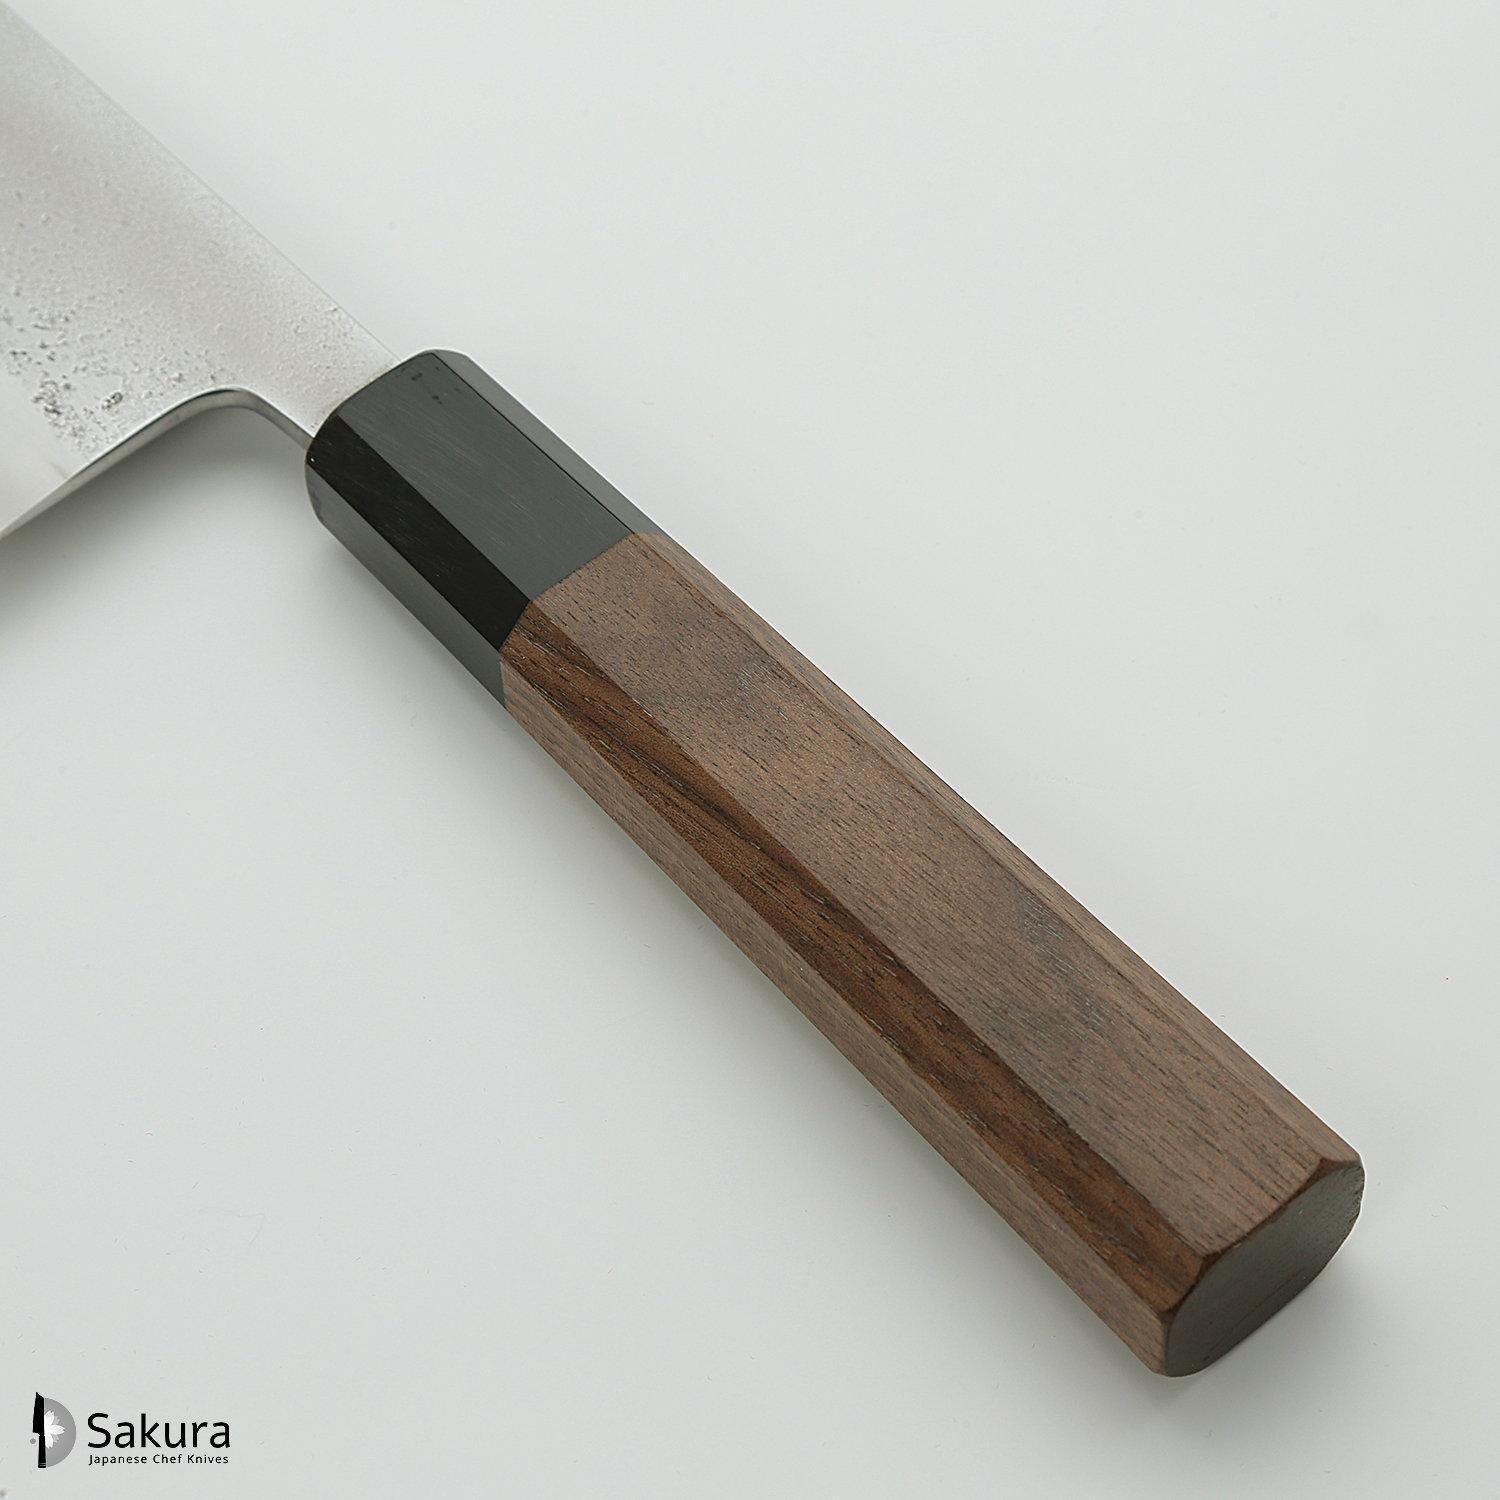 סכין ירקות נַקִירִי 165מ״מ מחושלת בעבודת יד 3 שכבות: פלדת פחמן יפנית מתקדמת מסוג Shirogami #2 עטופה פלדת אל-חלד גימור מט חיספוס טבעי יושיקאנה יפן